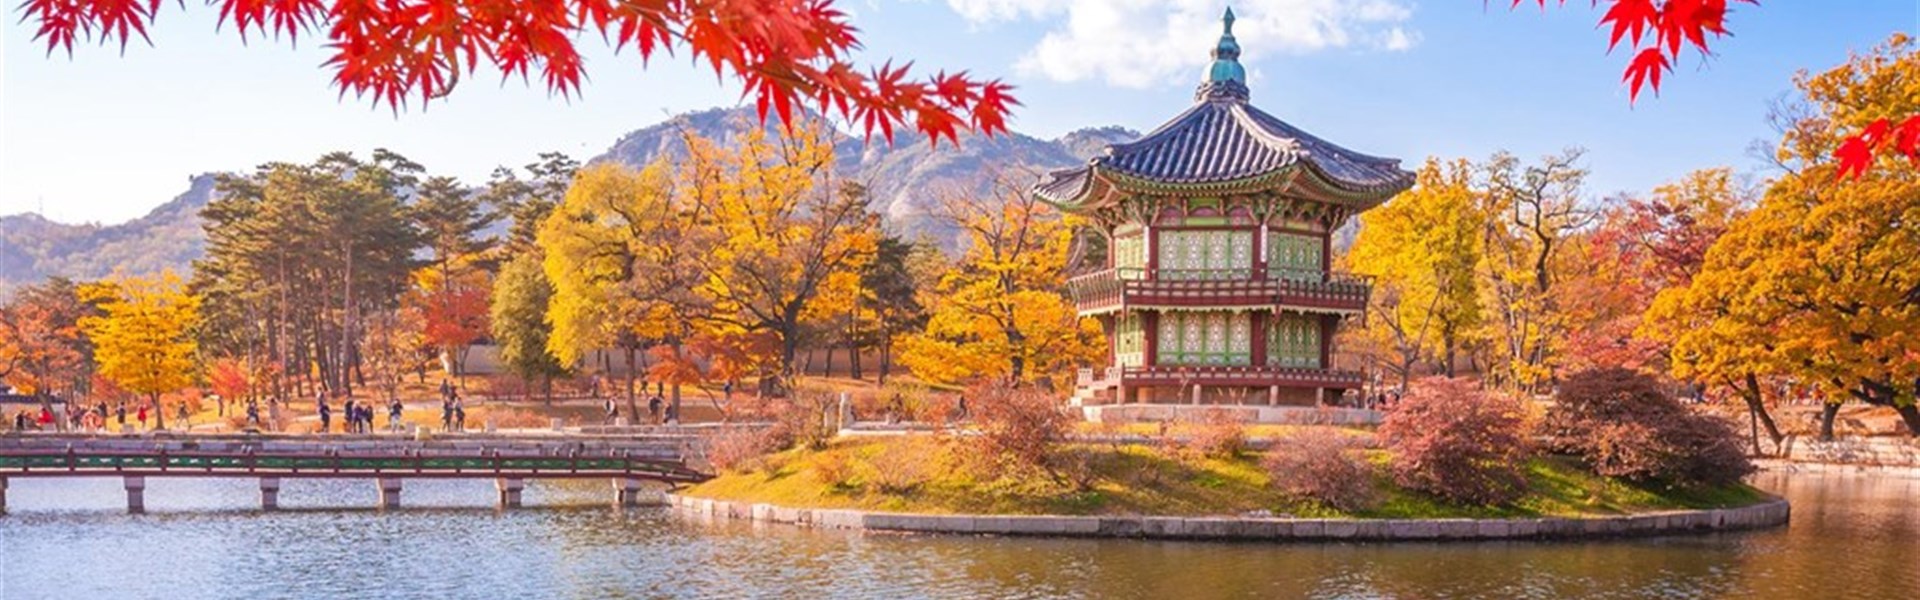 10 dní Jižní Koreou v barvách podzimu - Jižní Korea 10D podzim